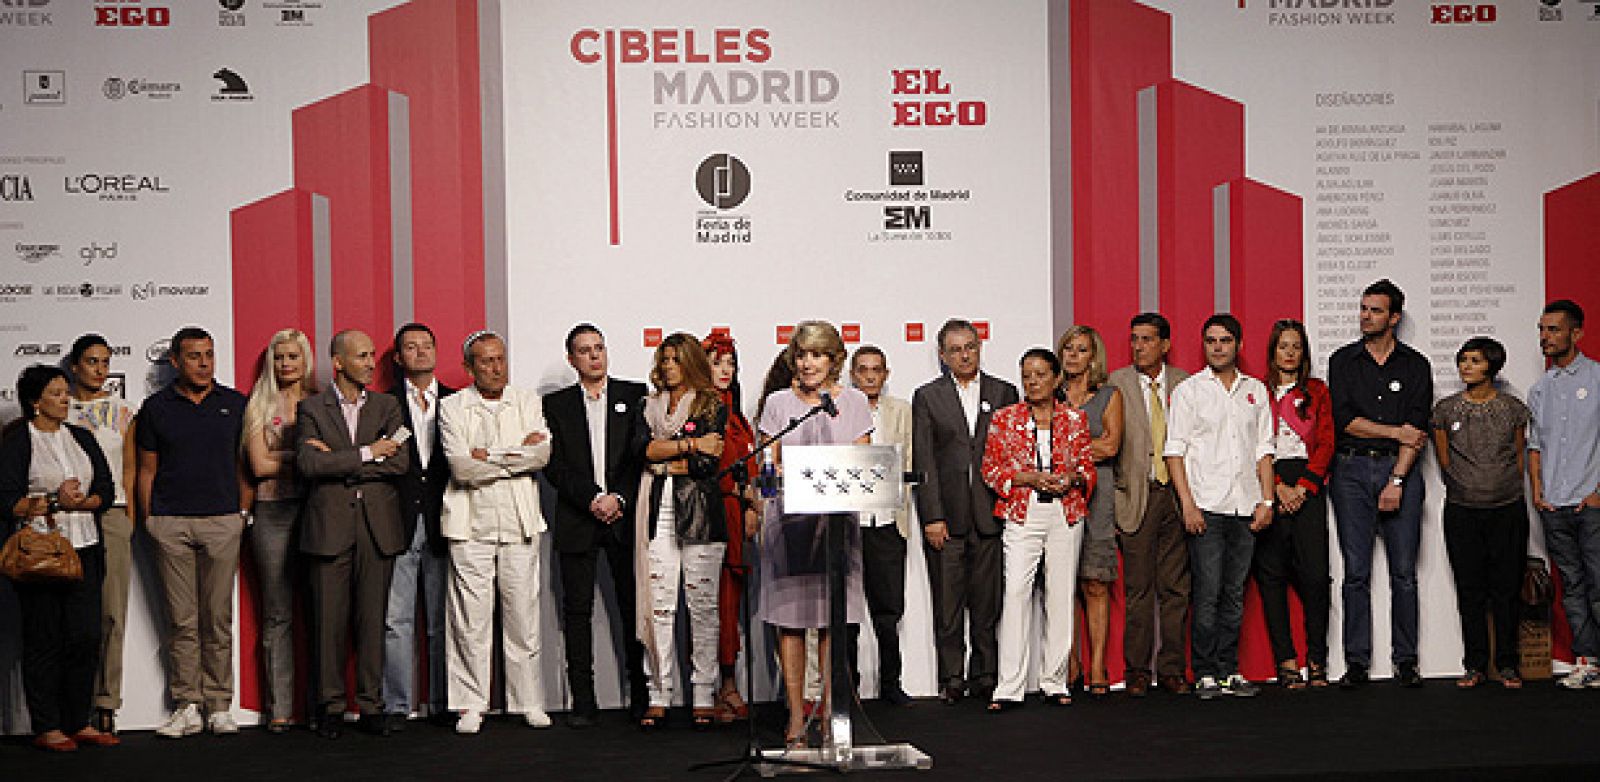 Esperanza Aguirre rodeada de algunos diseñadores y responsables de la Cibeles Fashion Week, durante la presentación de la pasarela madrileña.